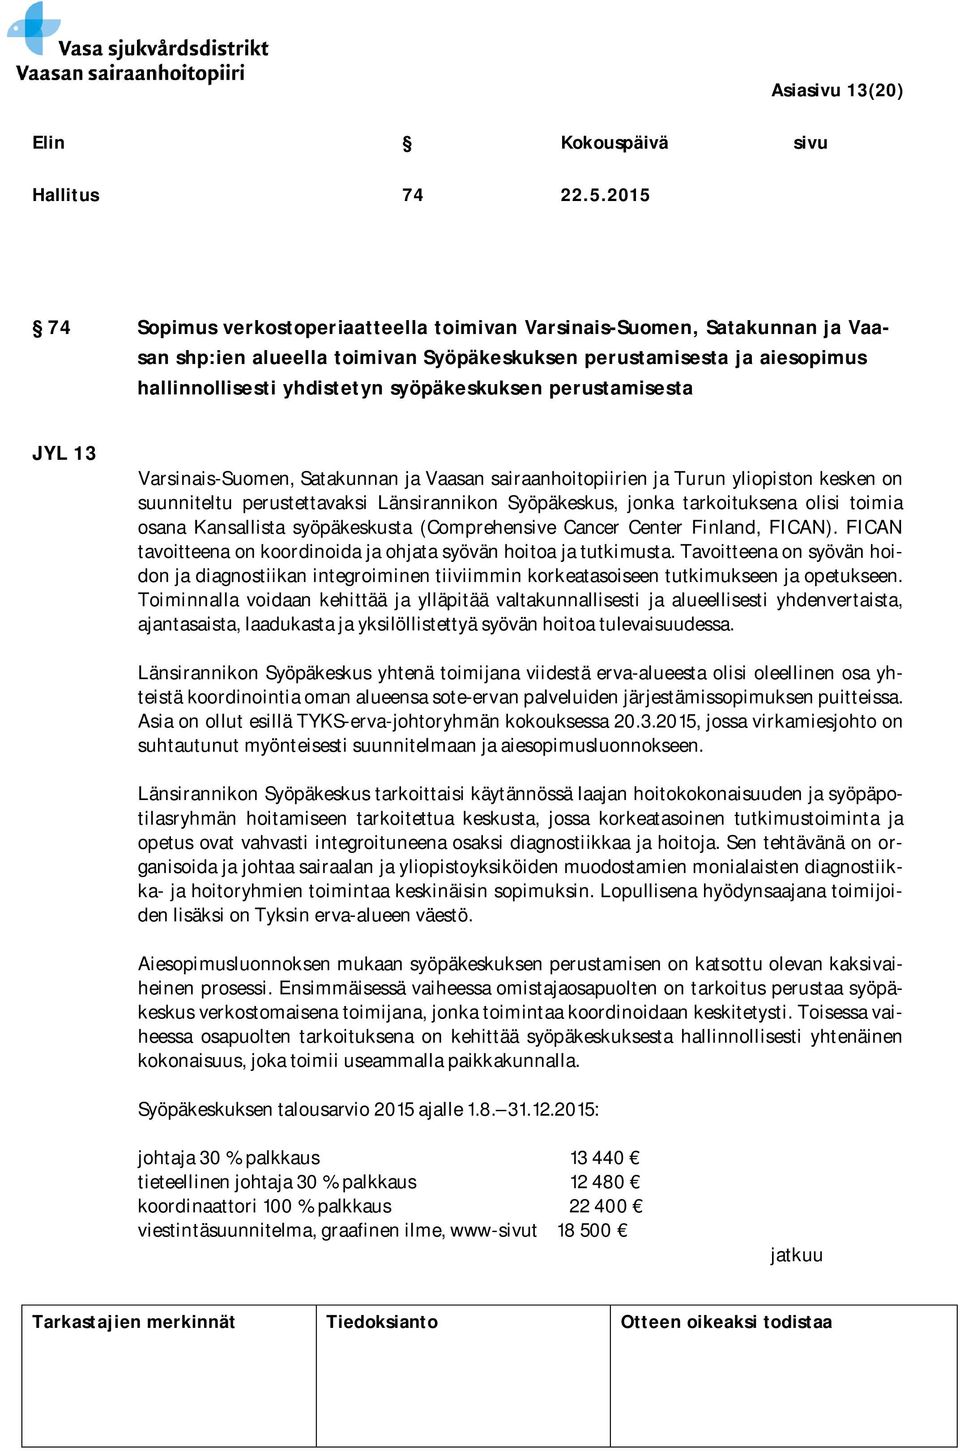 perustamisesta JYL 13 Varsinais-Suomen, Satakunnan ja Vaasan sairaanhoitopiirien ja Turun yliopiston kesken on suunniteltu perustettavaksi Länsirannikon Syöpäkeskus, jonka tarkoituksena olisi toimia